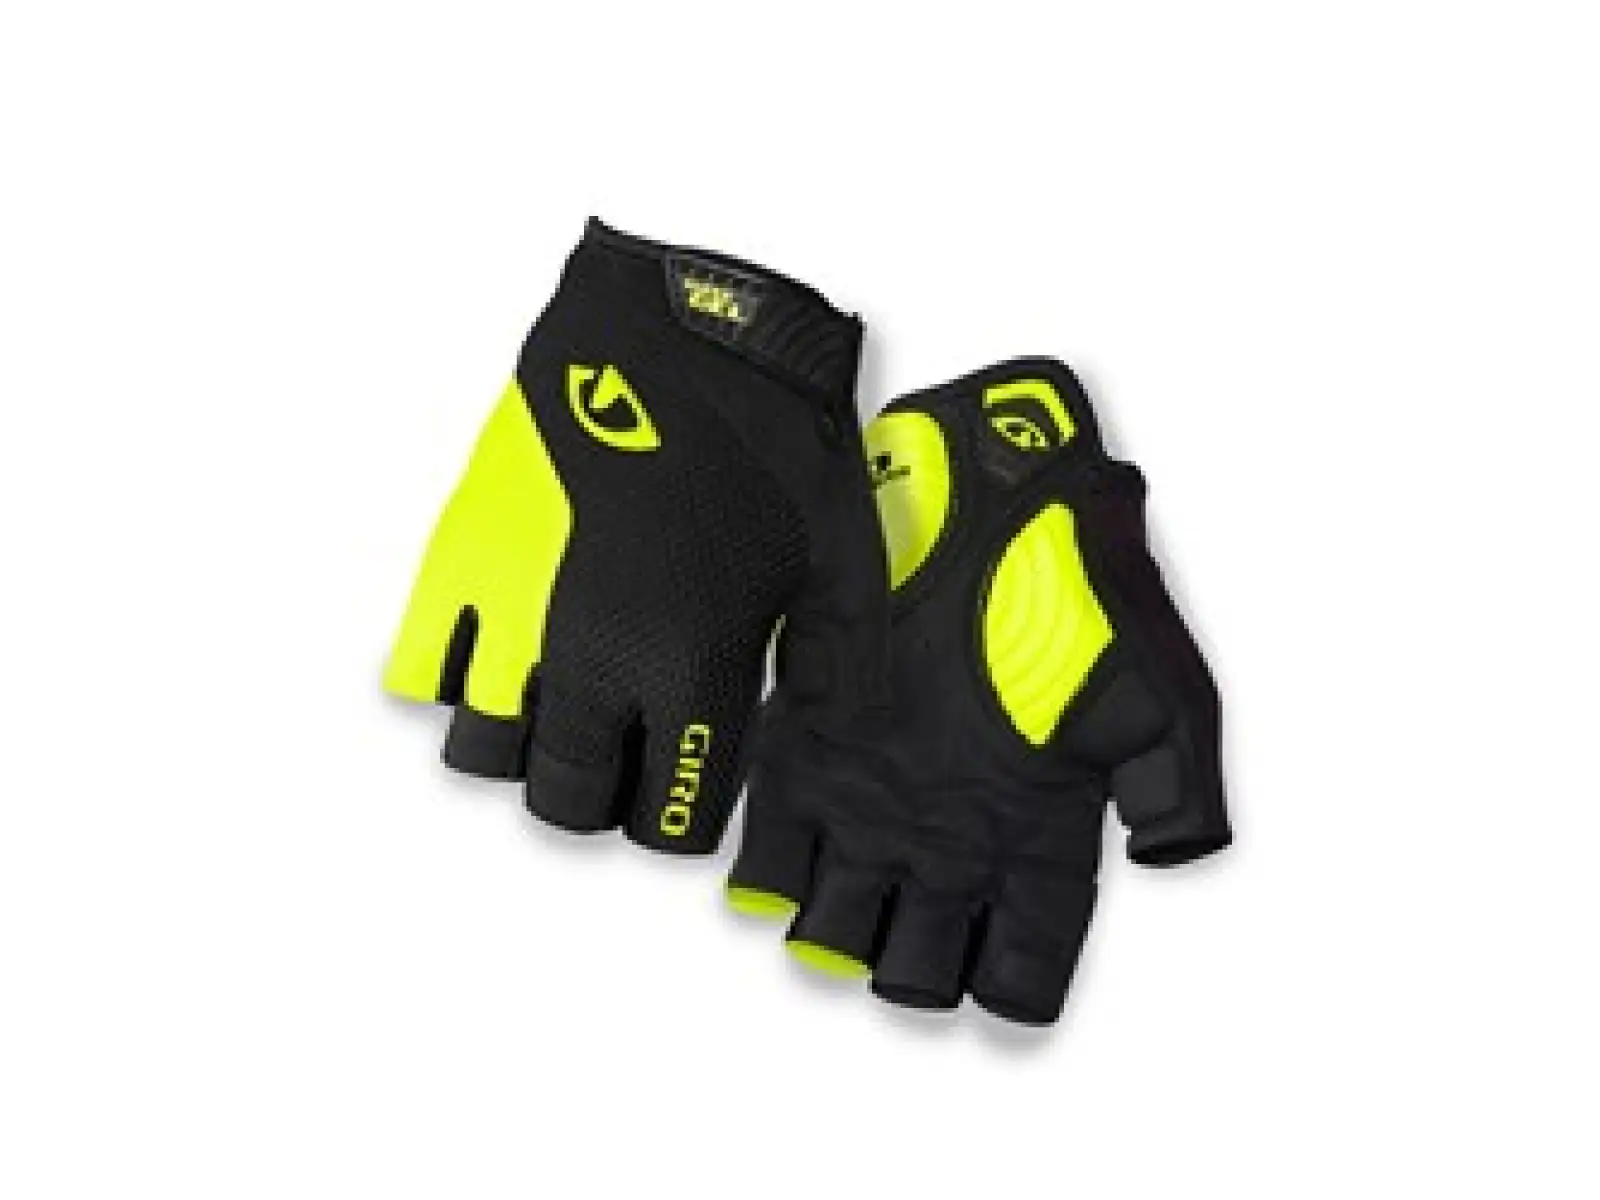 Giro Strade Dure rukavice Black/Highlight Yellow